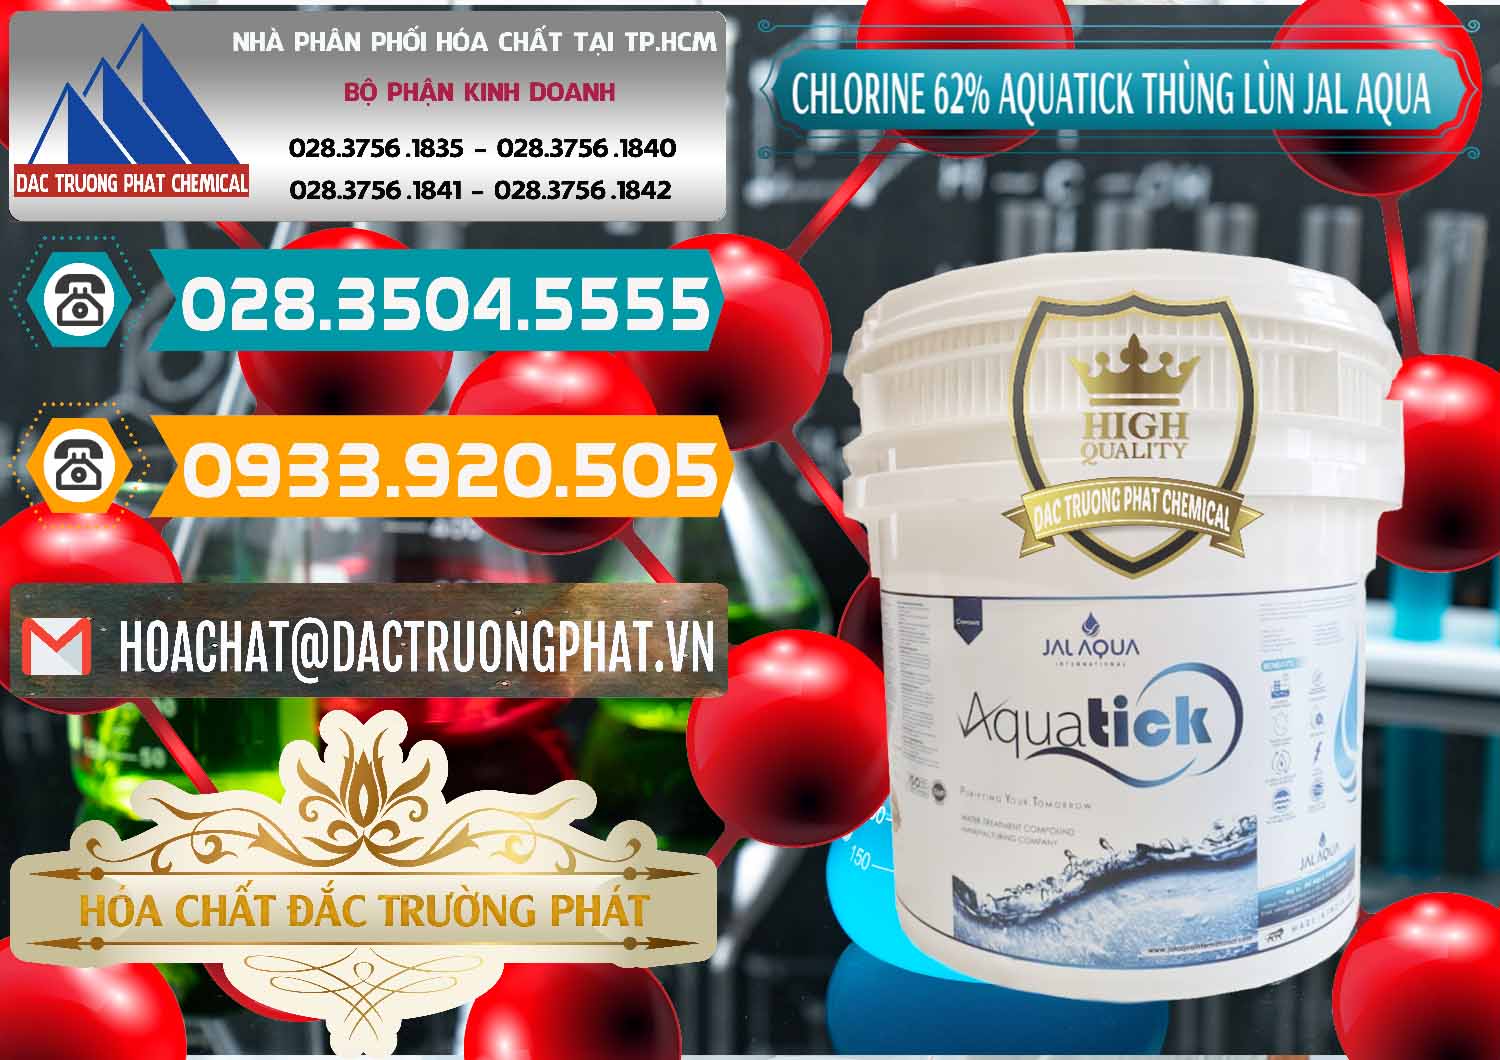 Cung cấp & bán Chlorine – Clorin 62% Aquatick Thùng Lùn Jal Aqua Ấn Độ India - 0238 - Nơi cung ứng - phân phối hóa chất tại TP.HCM - congtyhoachat.vn